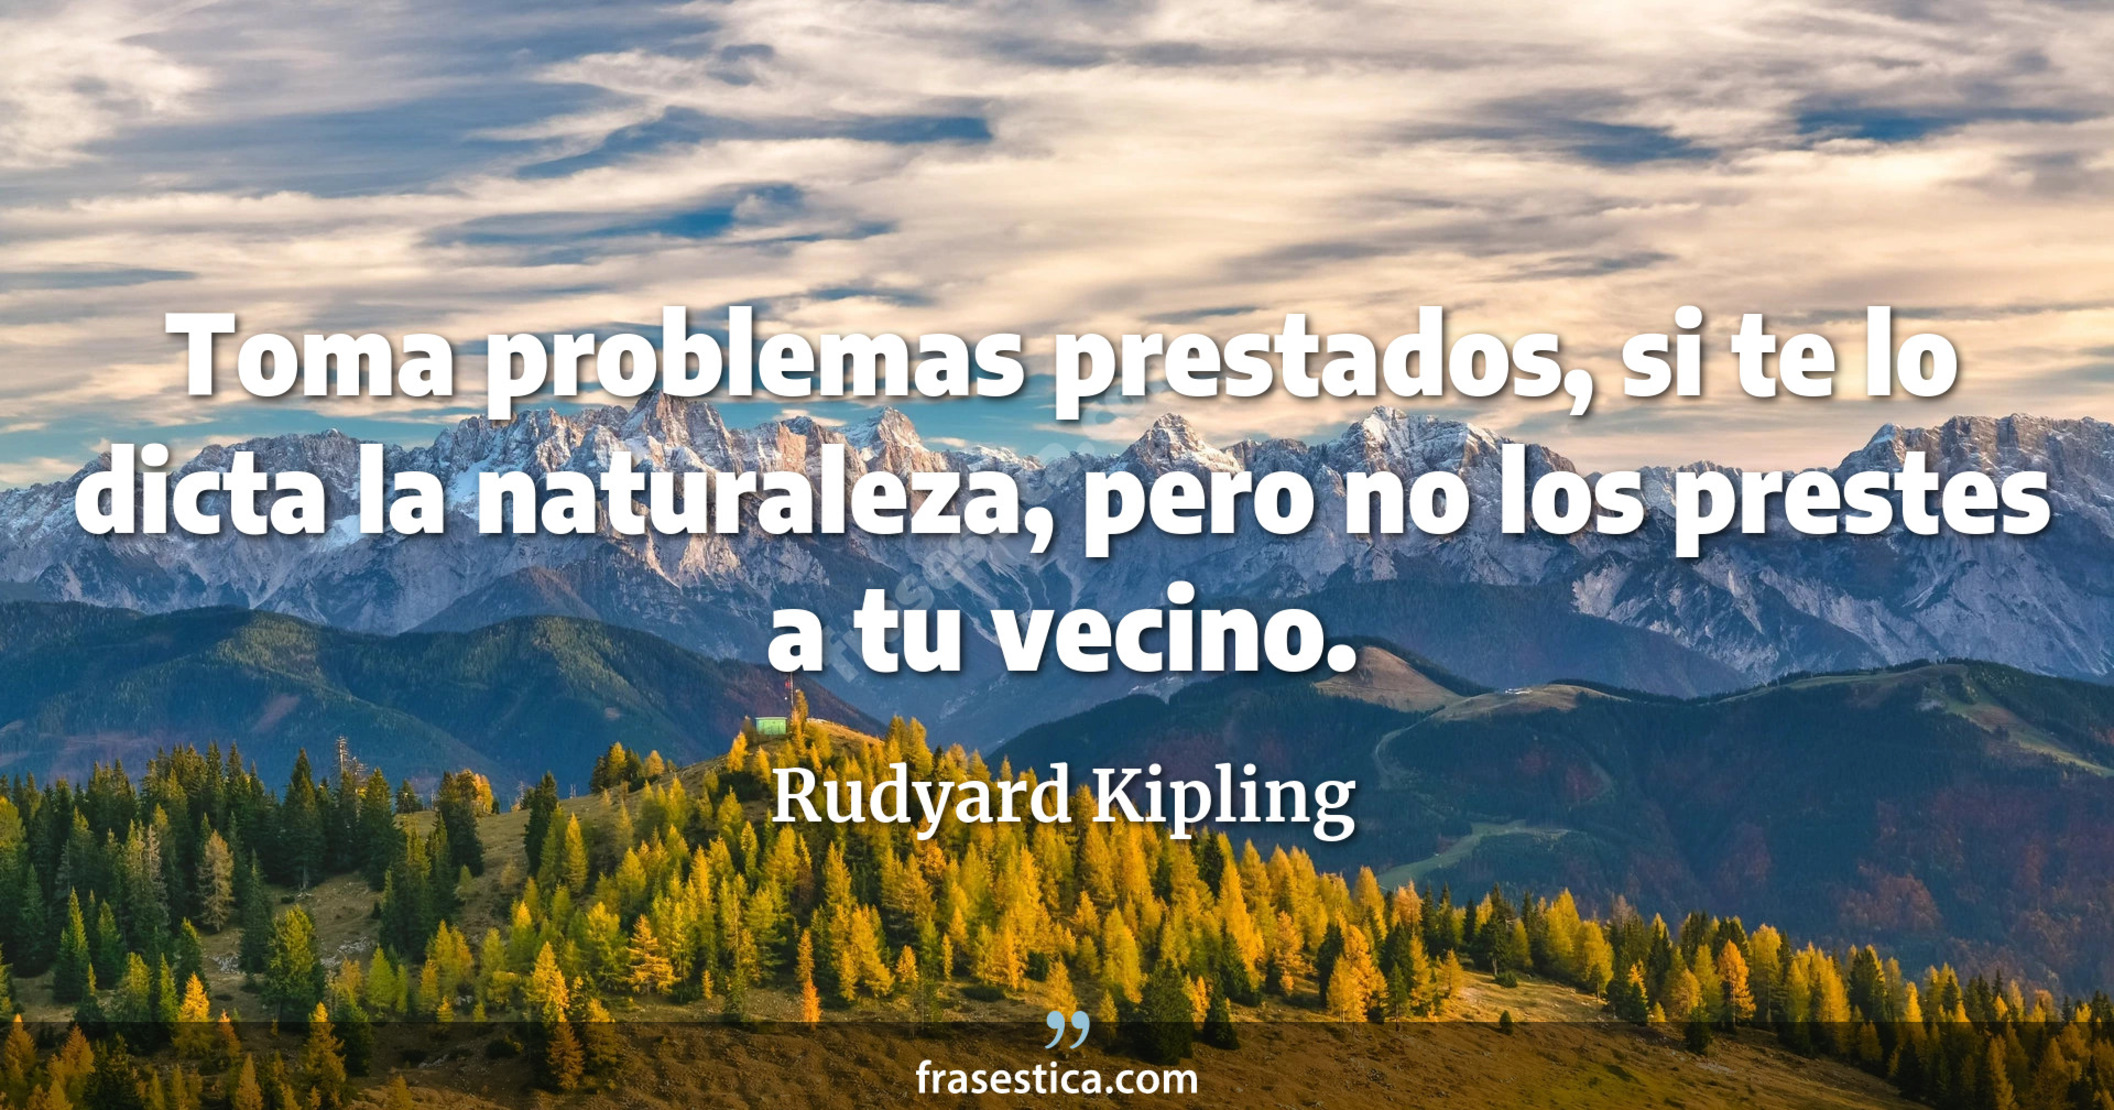 Toma problemas prestados, si te lo dicta la naturaleza, pero no los prestes a tu vecino. - Rudyard Kipling